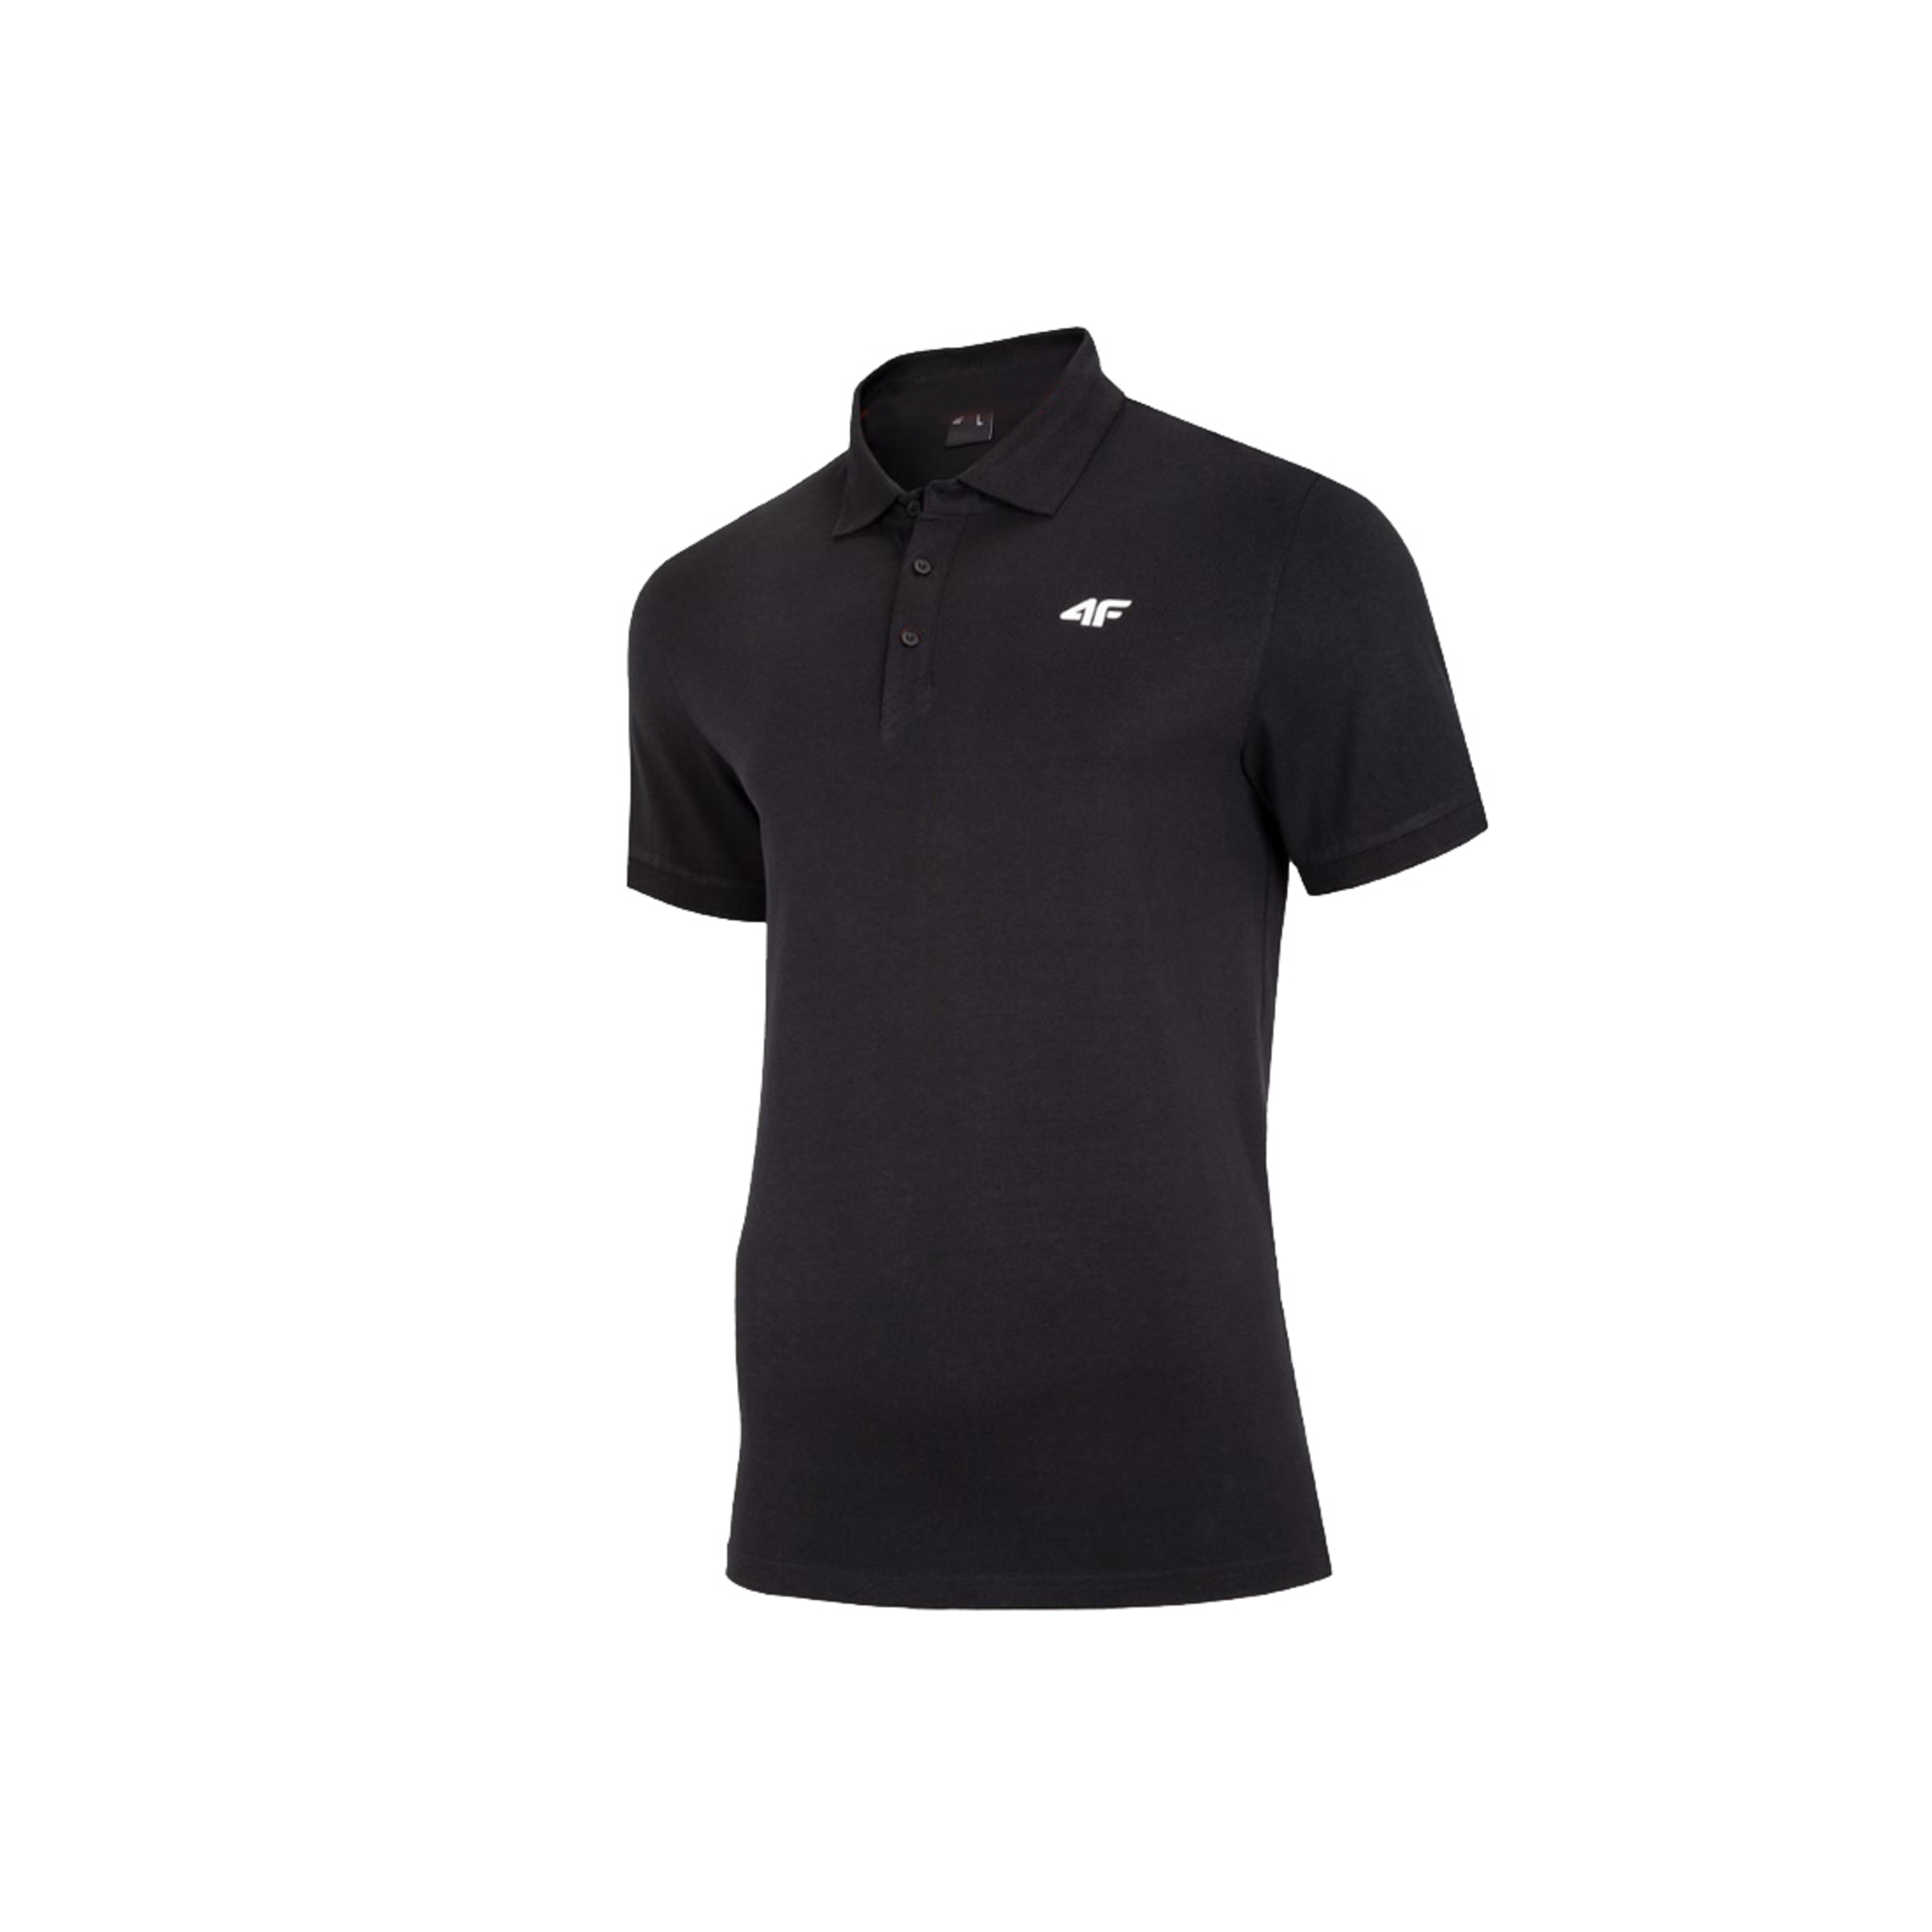 4f Men's T-shirt Polo Nosh4-tsm007-20s - negro - 